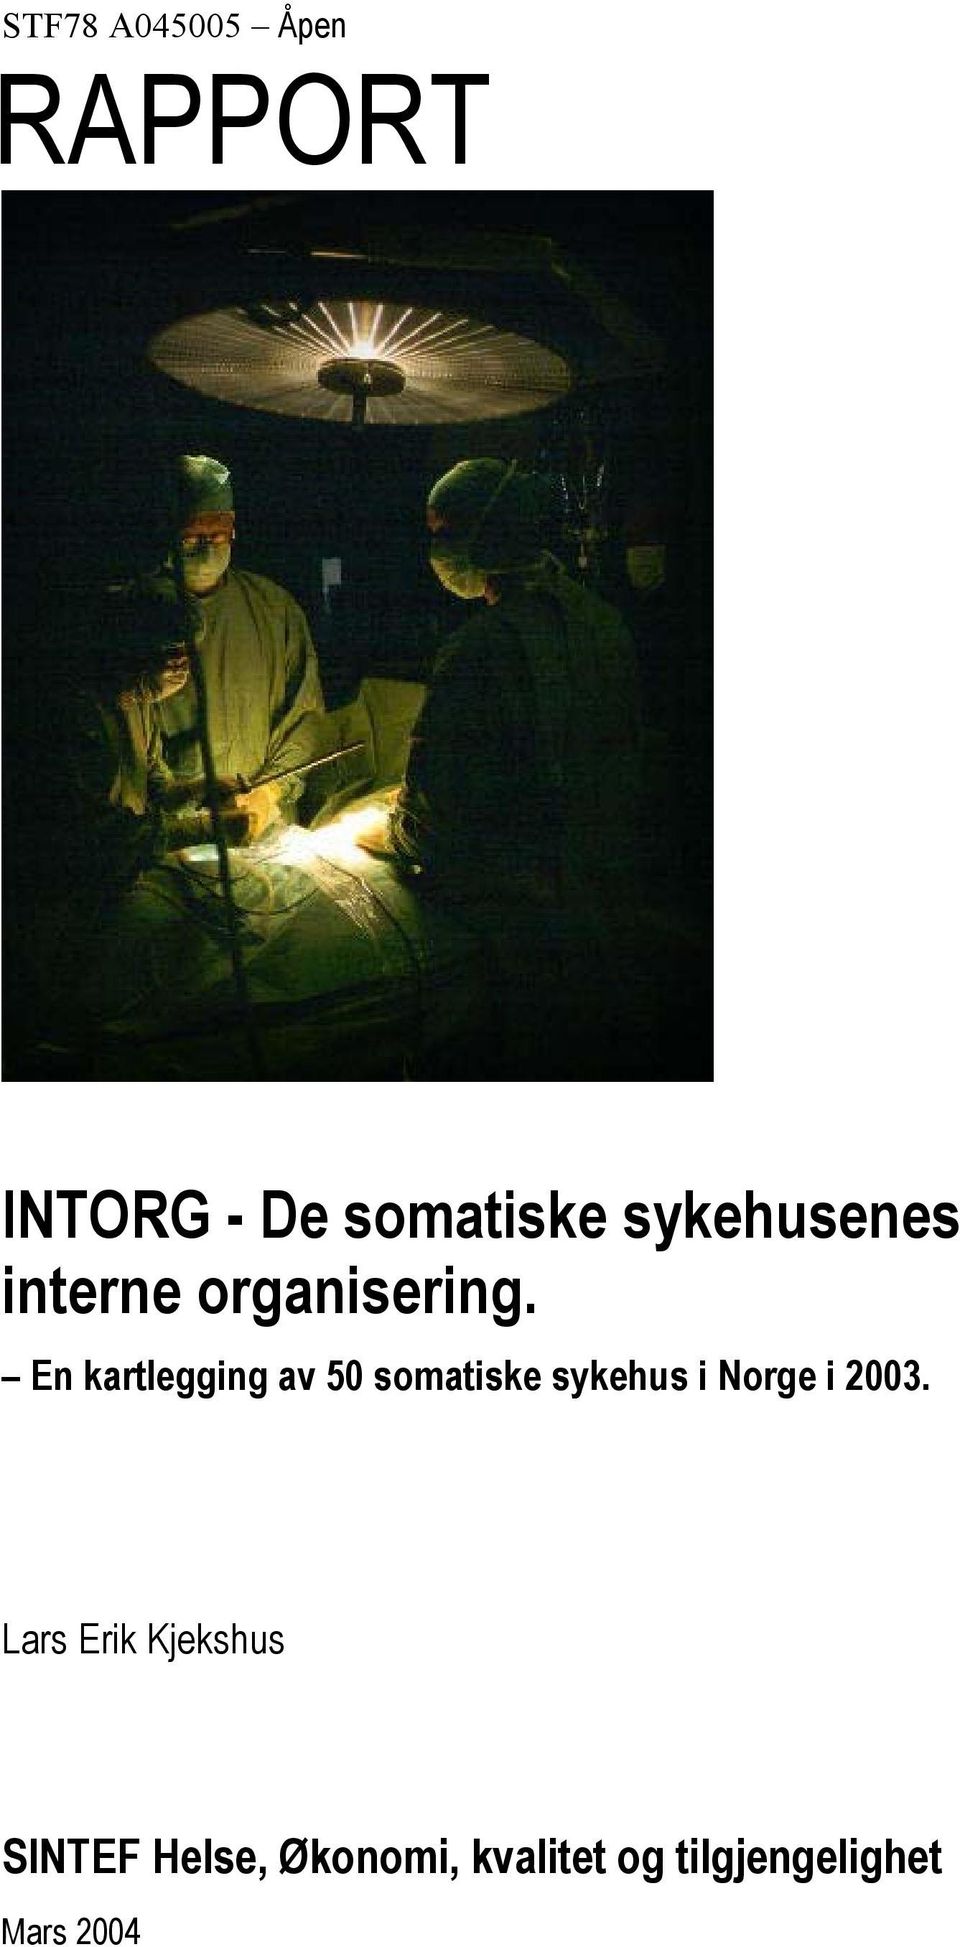 En kartlegging av 50 somatiske sykehus i Norge i 2003.